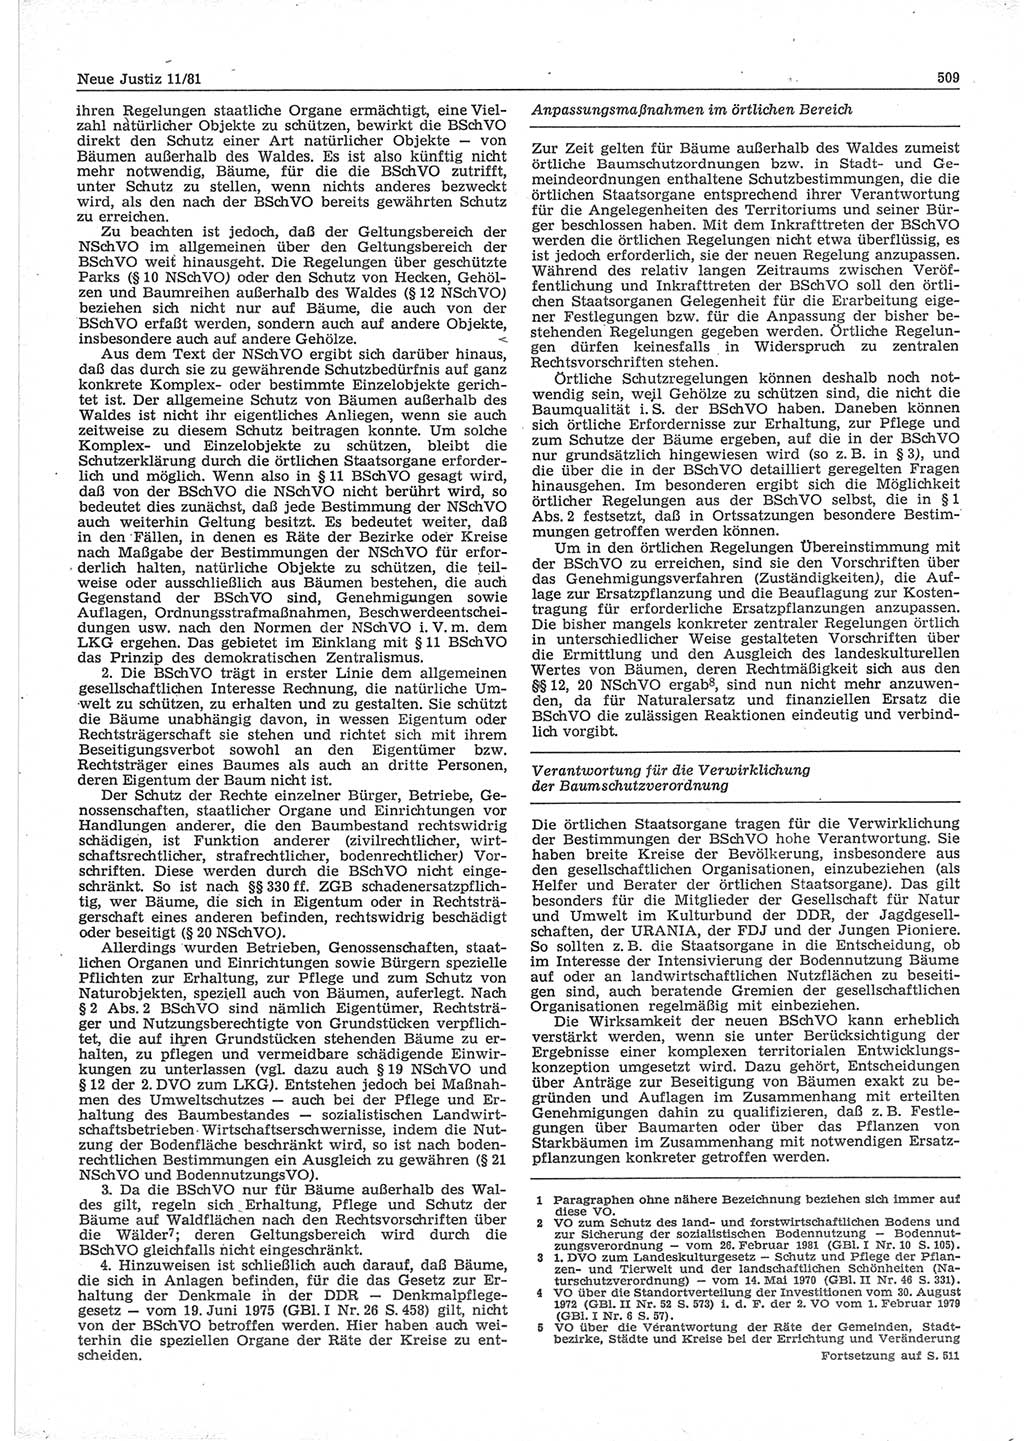 Neue Justiz (NJ), Zeitschrift für sozialistisches Recht und Gesetzlichkeit [Deutsche Demokratische Republik (DDR)], 35. Jahrgang 1981, Seite 509 (NJ DDR 1981, S. 509)